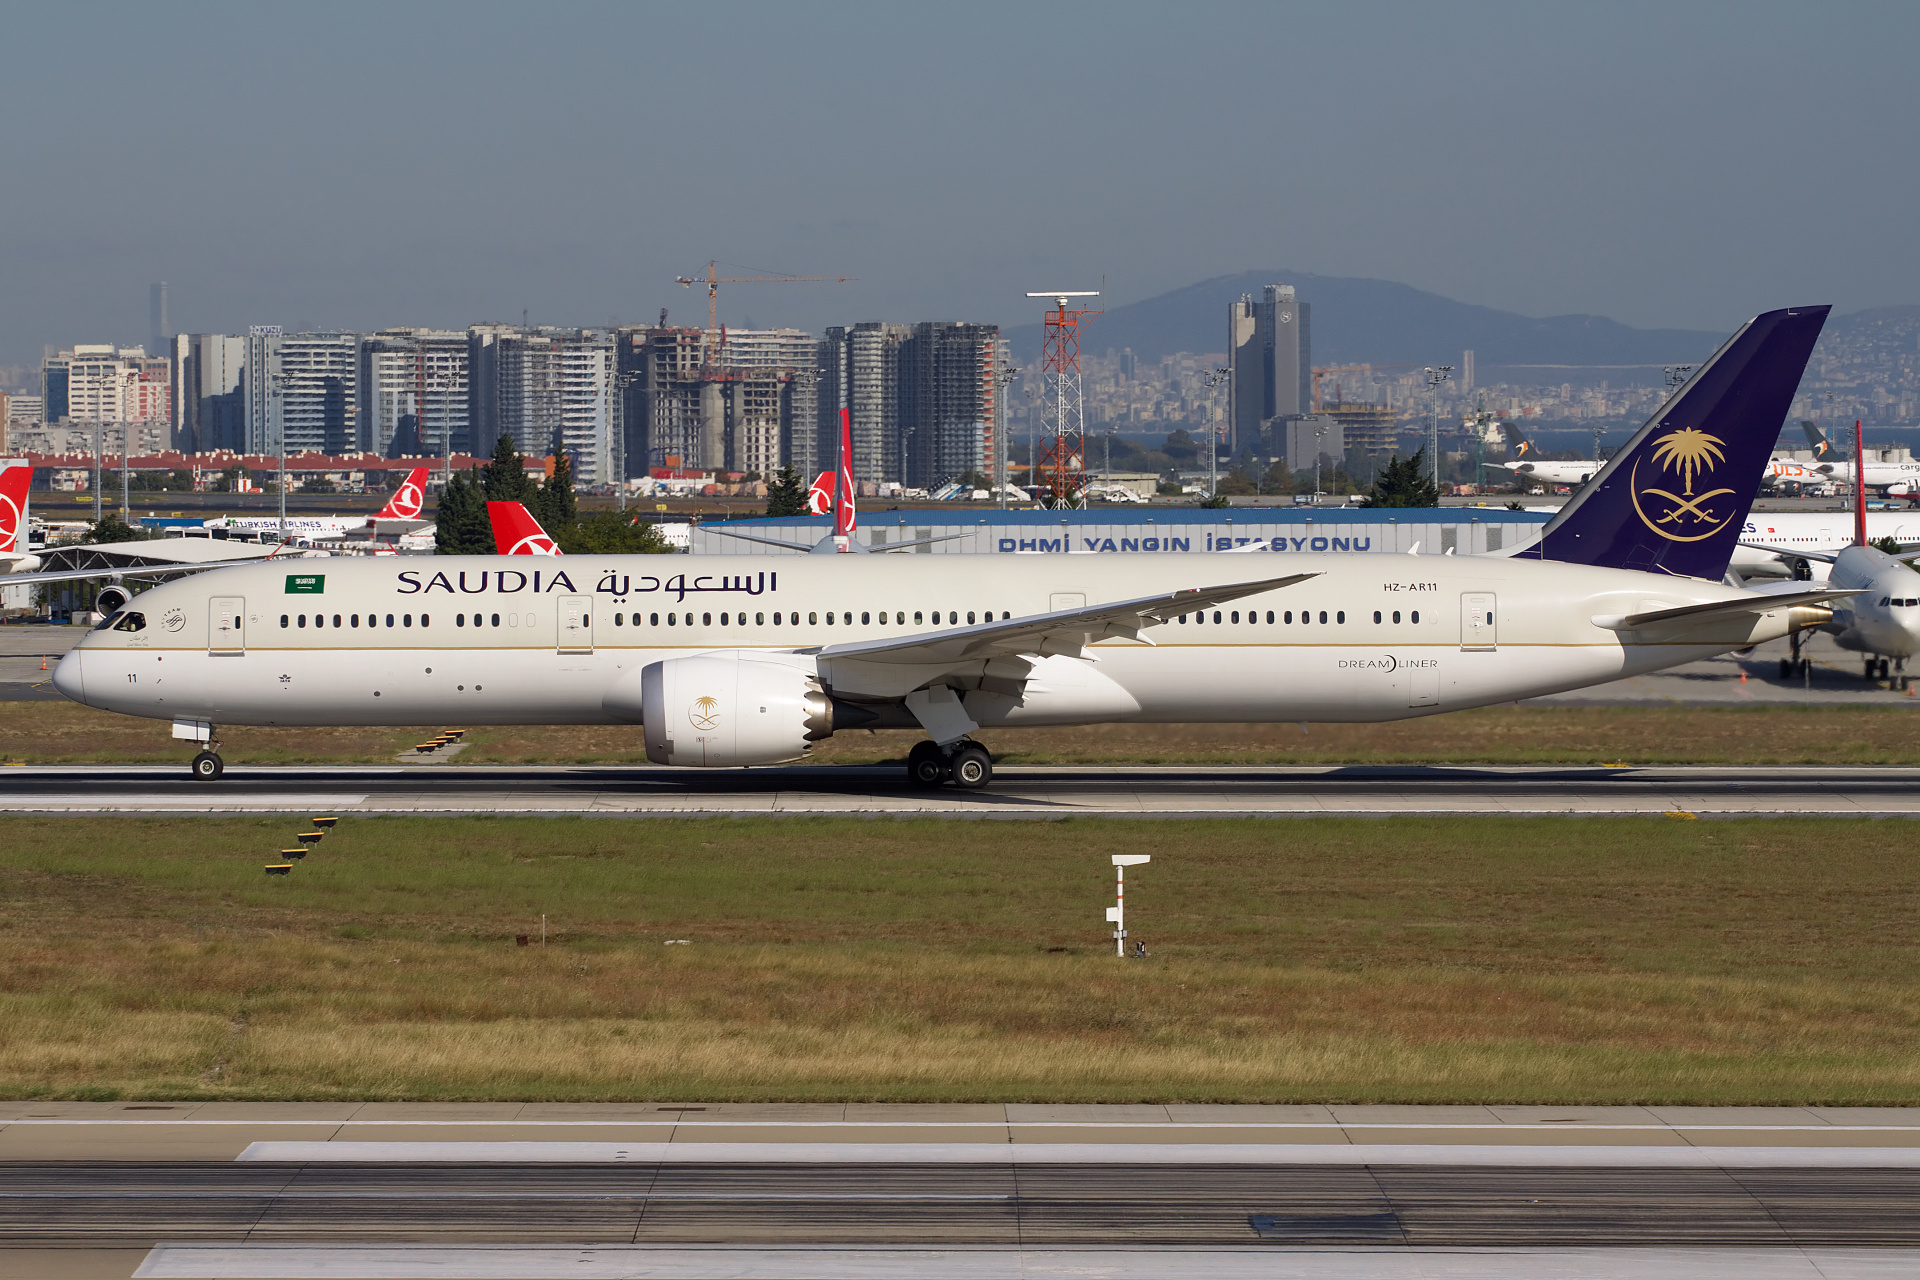 HZ-AR11, Saudi Arabian Airlines (Saudia) (Samoloty » Port Lotniczy im. Atatürka w Stambule » Boeing 787-9 Dreamliner)